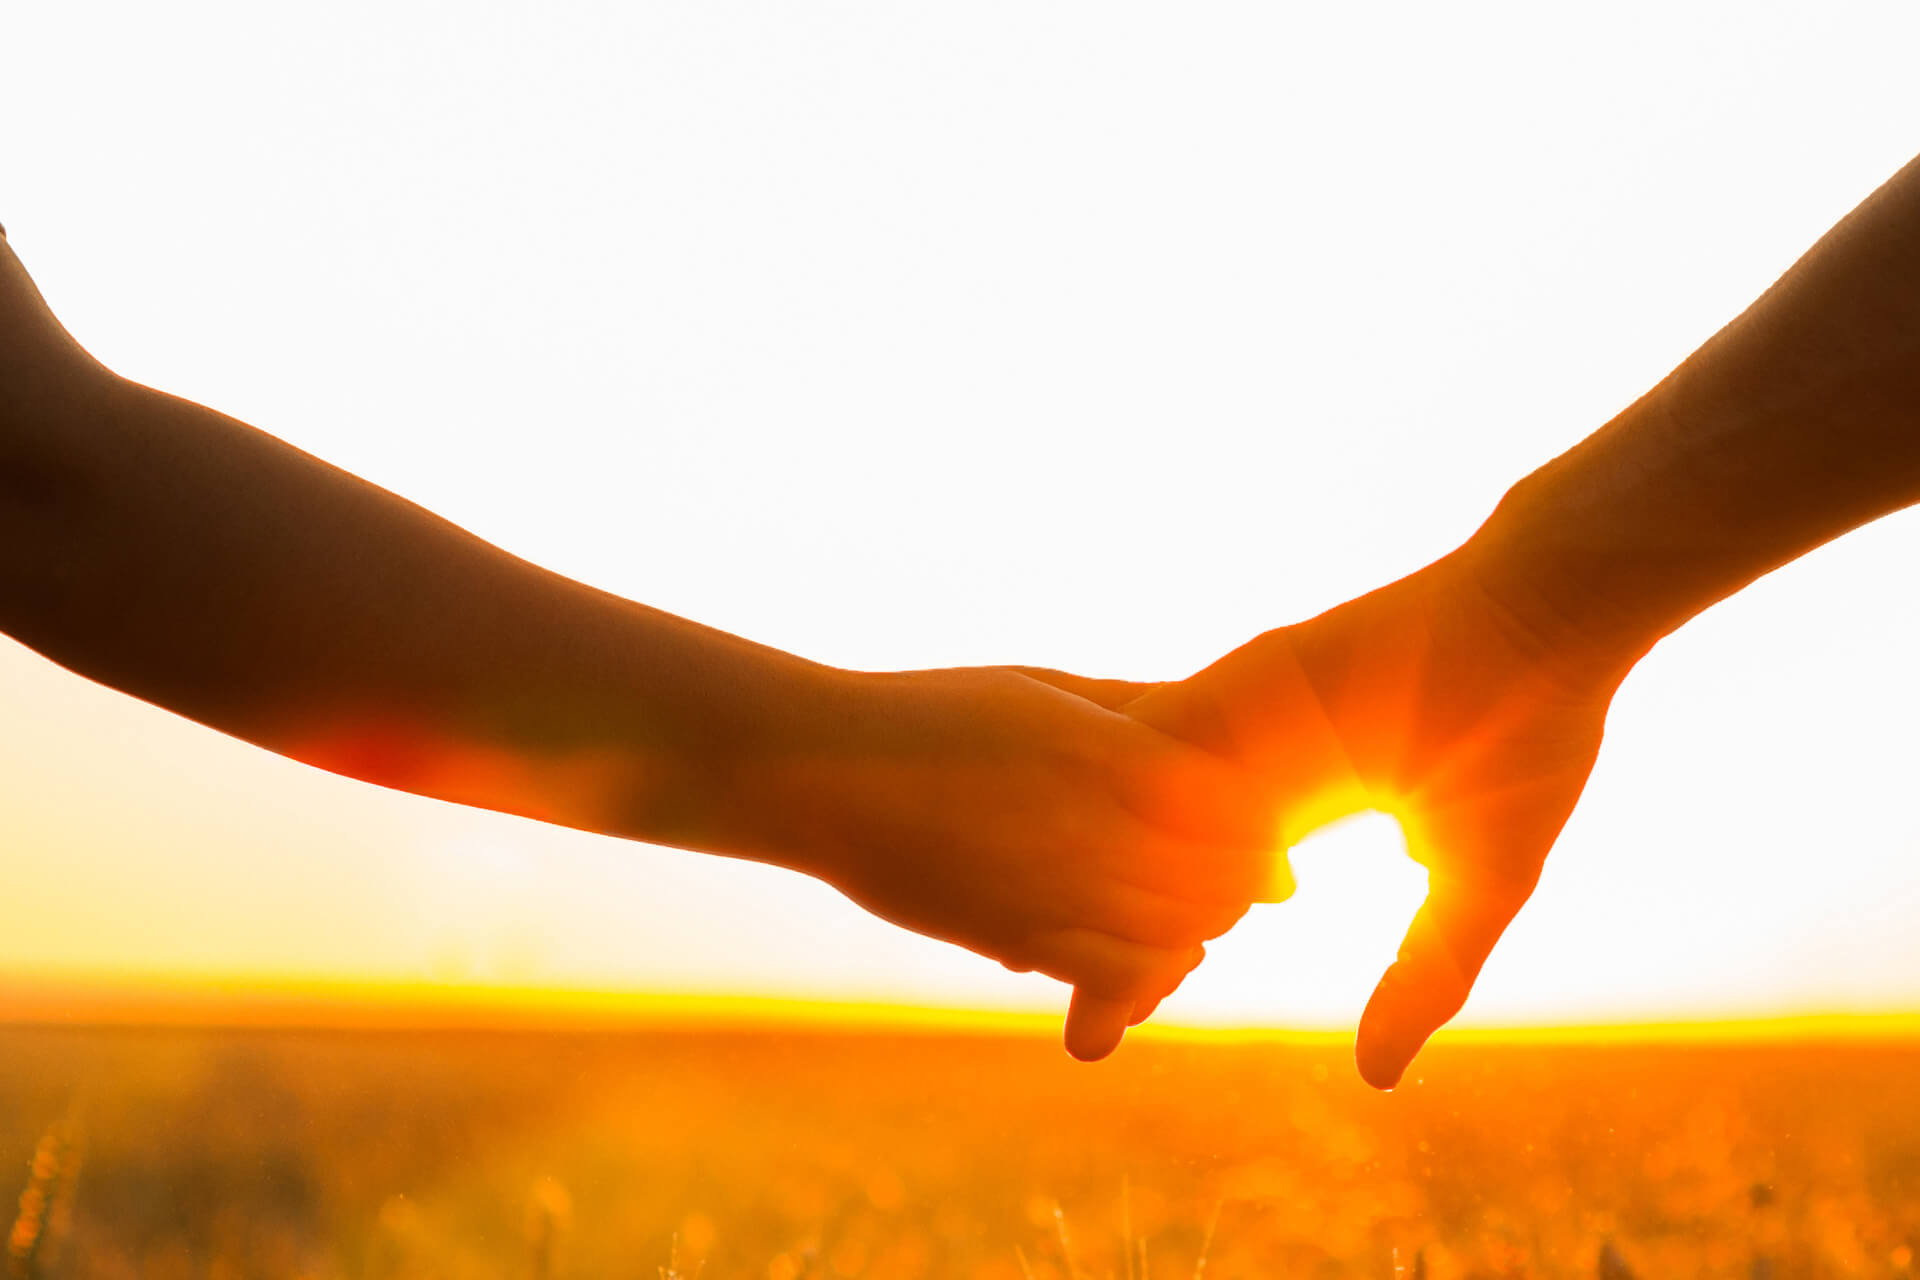 Ein Paar läuft in den Sonnenuntergang auf einem Feld, wovon nur die haltenden Hände zu sehen sind.